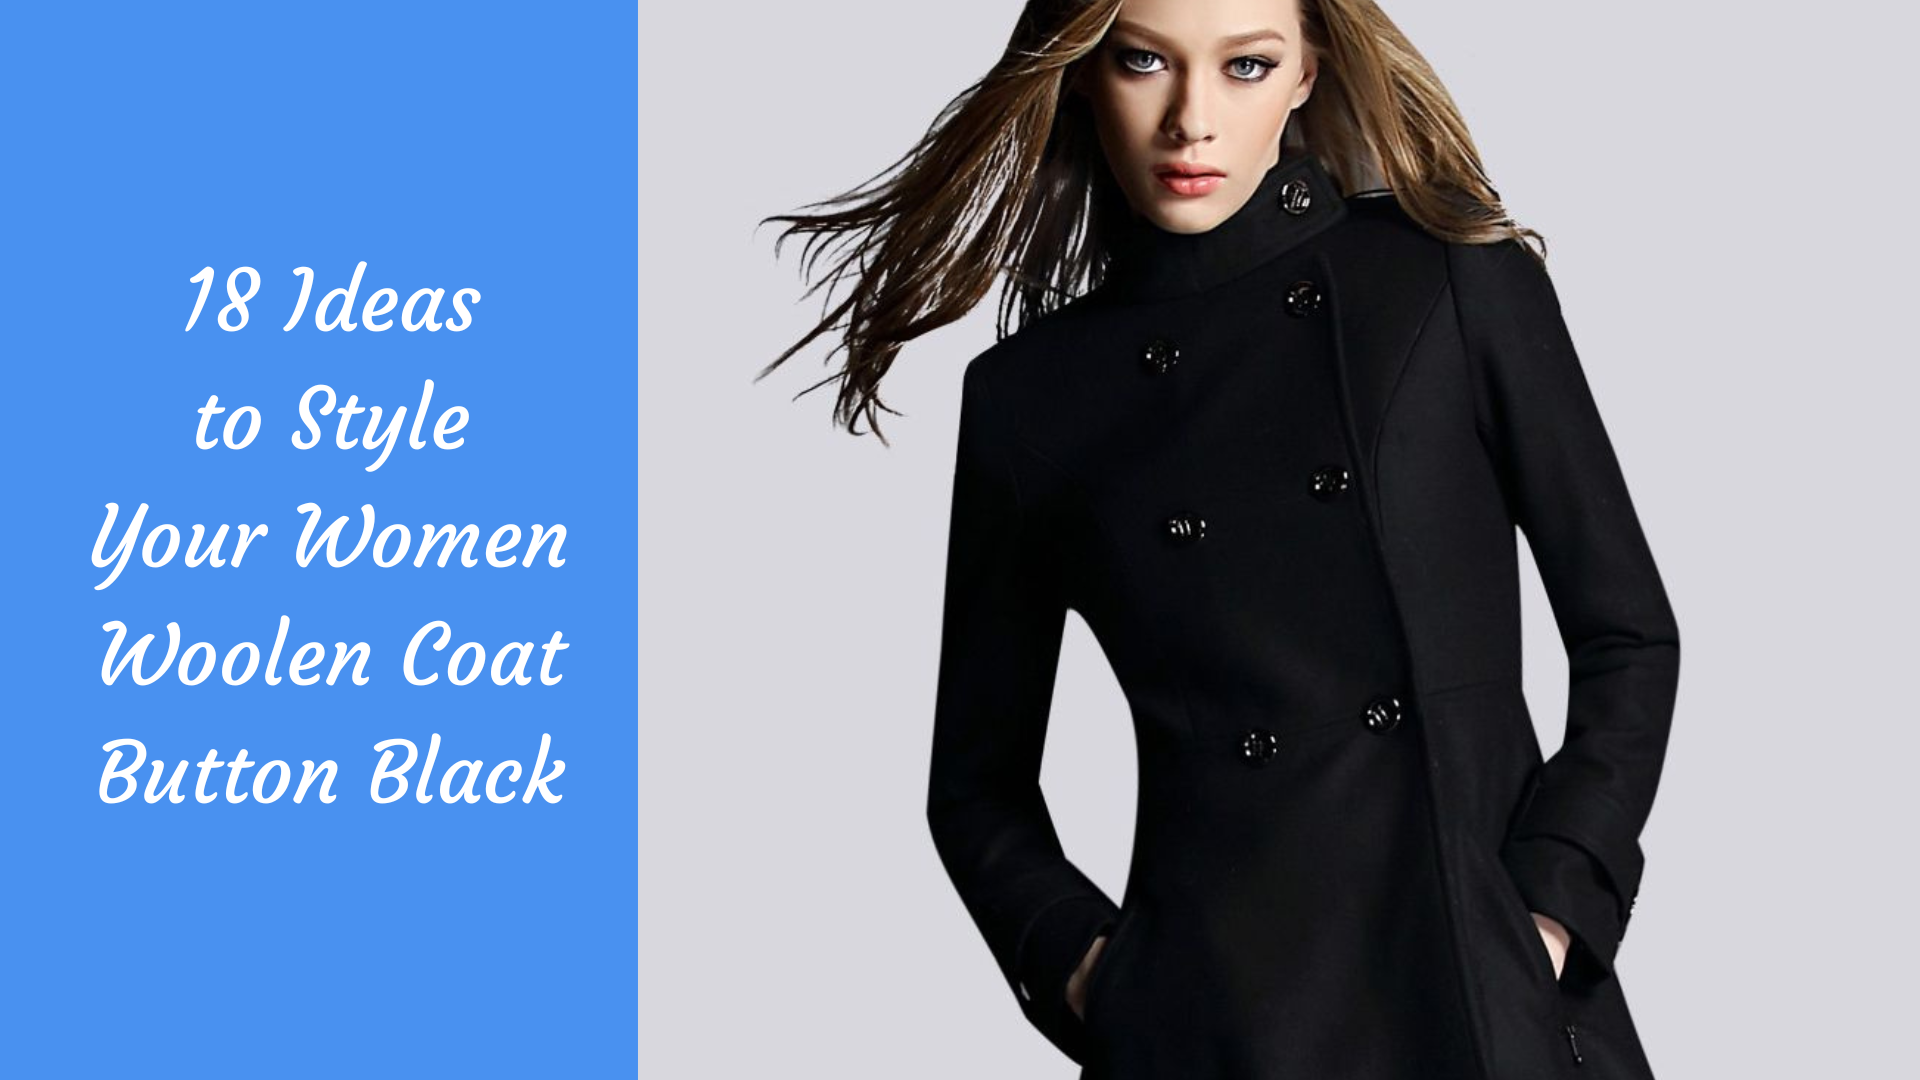 women woolen coat button black article cover image